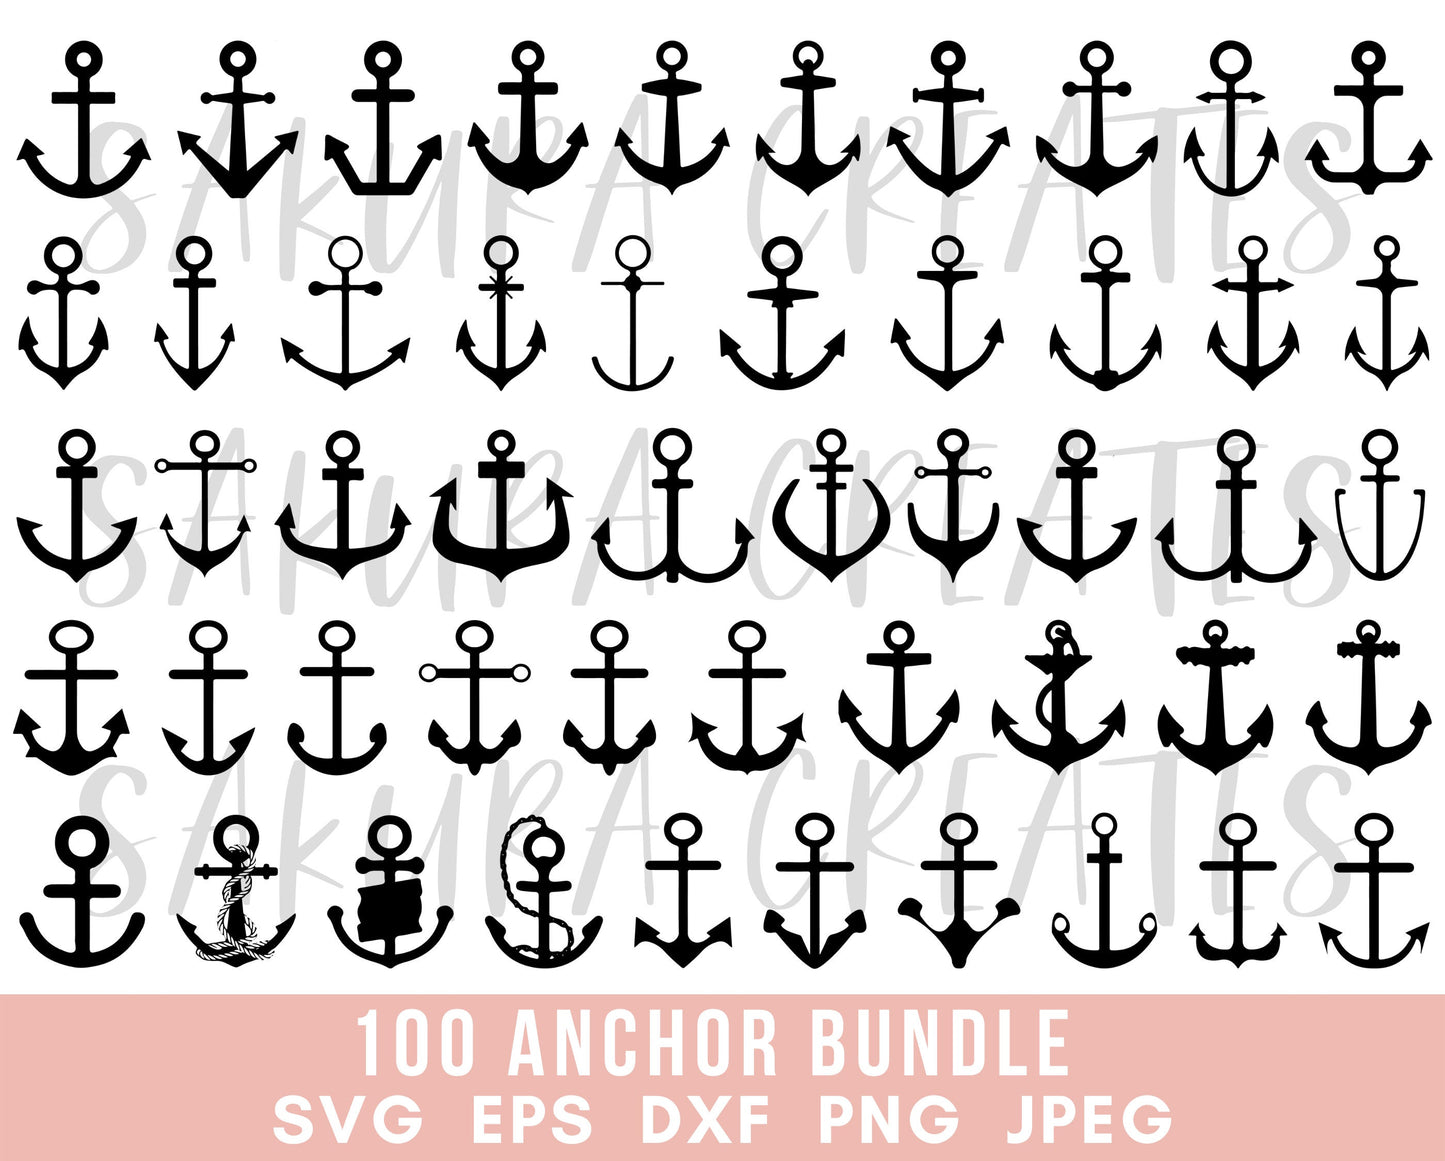 Anchor SVG Bundle Anchor Clipart Anchor Cut File Anchor Silhouette Anchor Decal Anchor Vector Nautical Svg files for Cricut Commercial Use